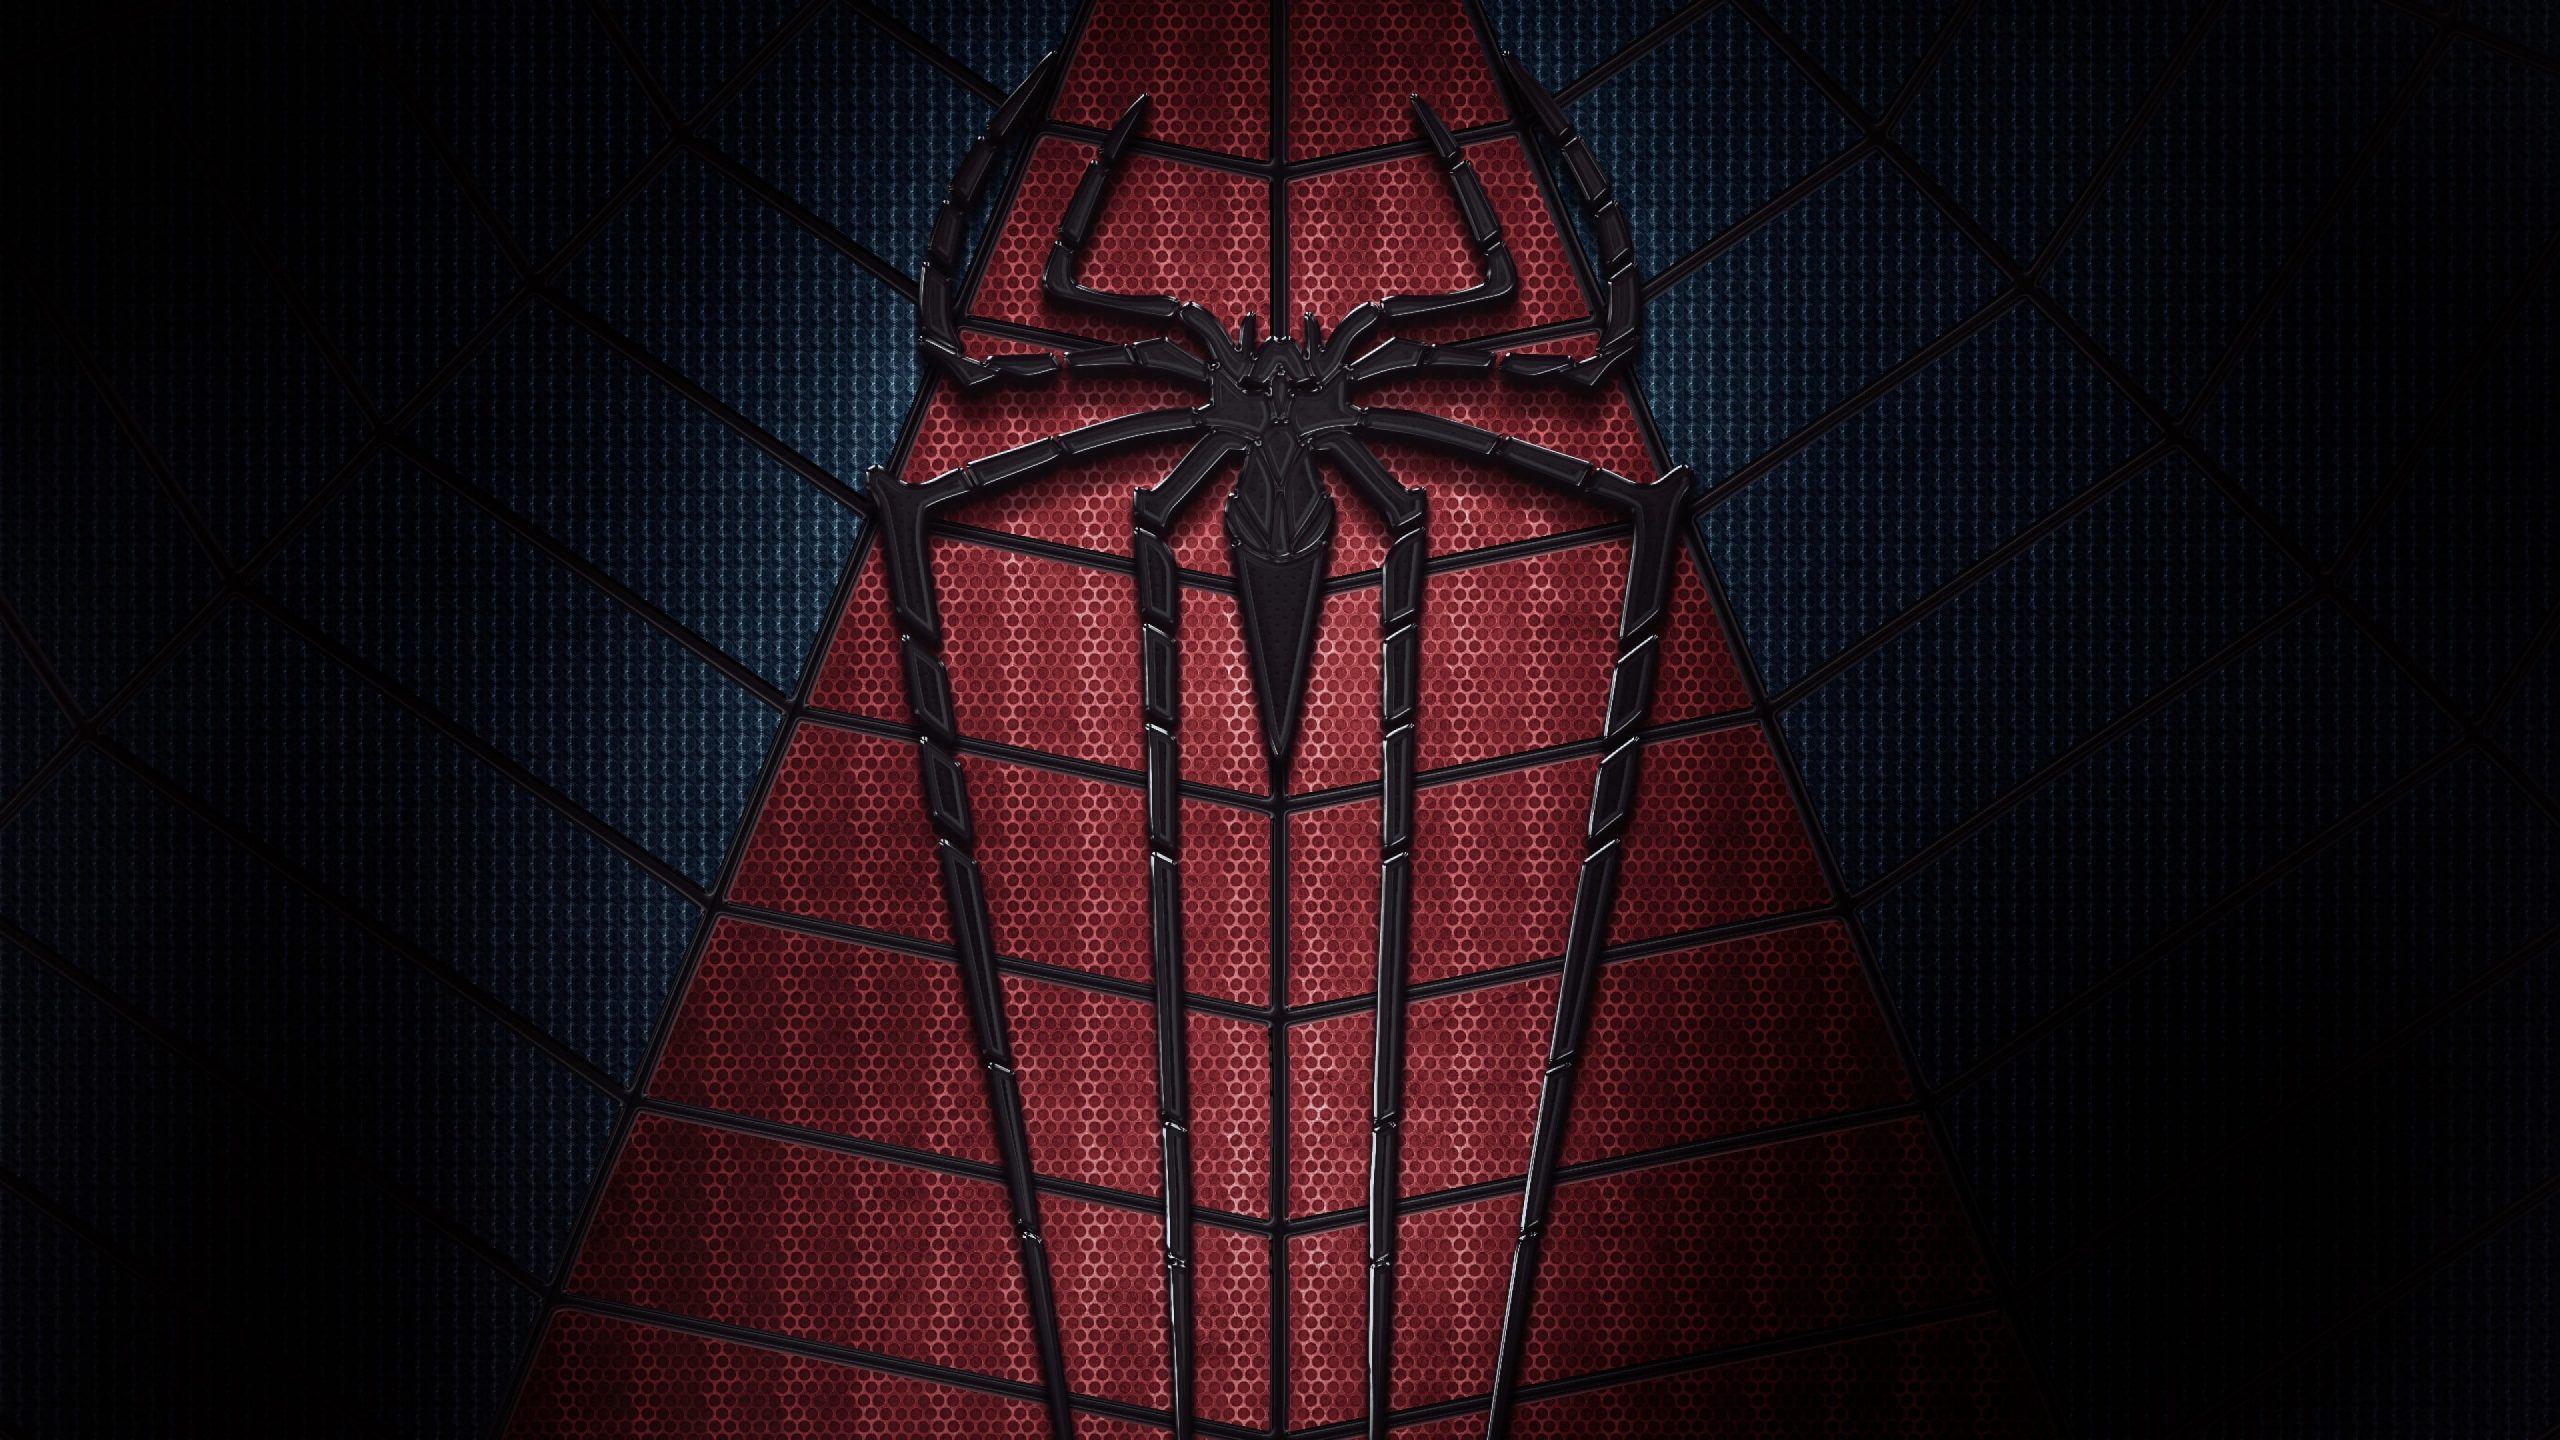 Spider-Man wallpaper, Marvel Comics, superhero, logo, dark, red